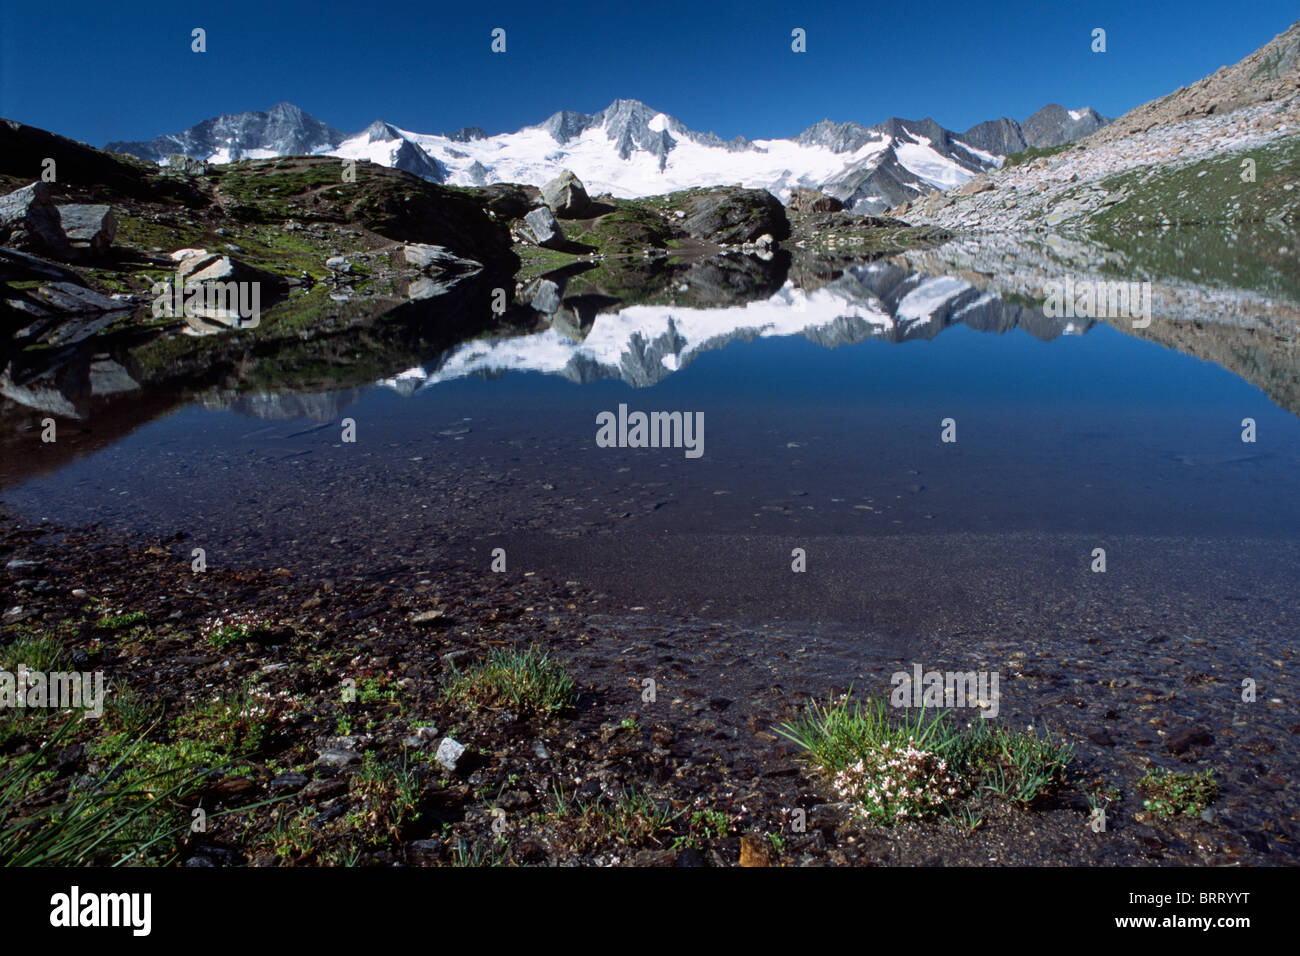 Montare Grosser Moeseler riflessa nel Lago Schwarzsee nelle Alpi dello Zillertal, Tirolo del nord, Austria, Europa Foto Stock